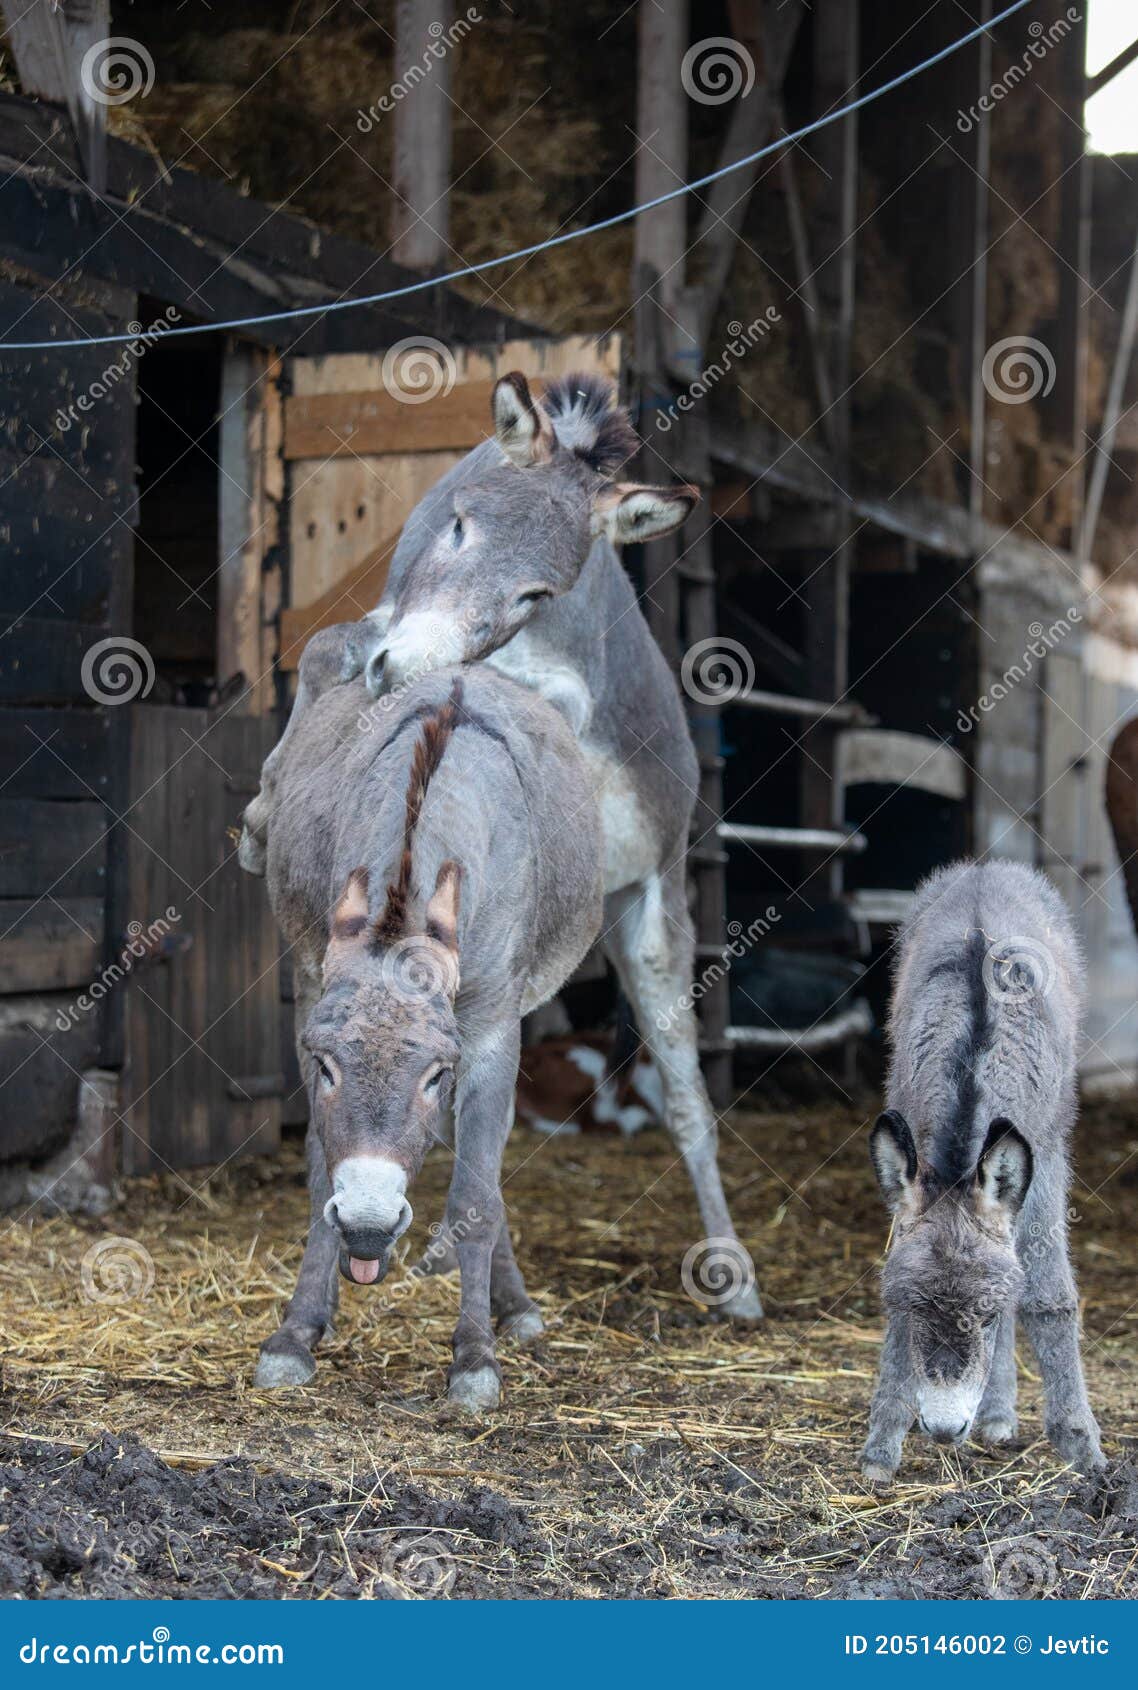 donkey mating